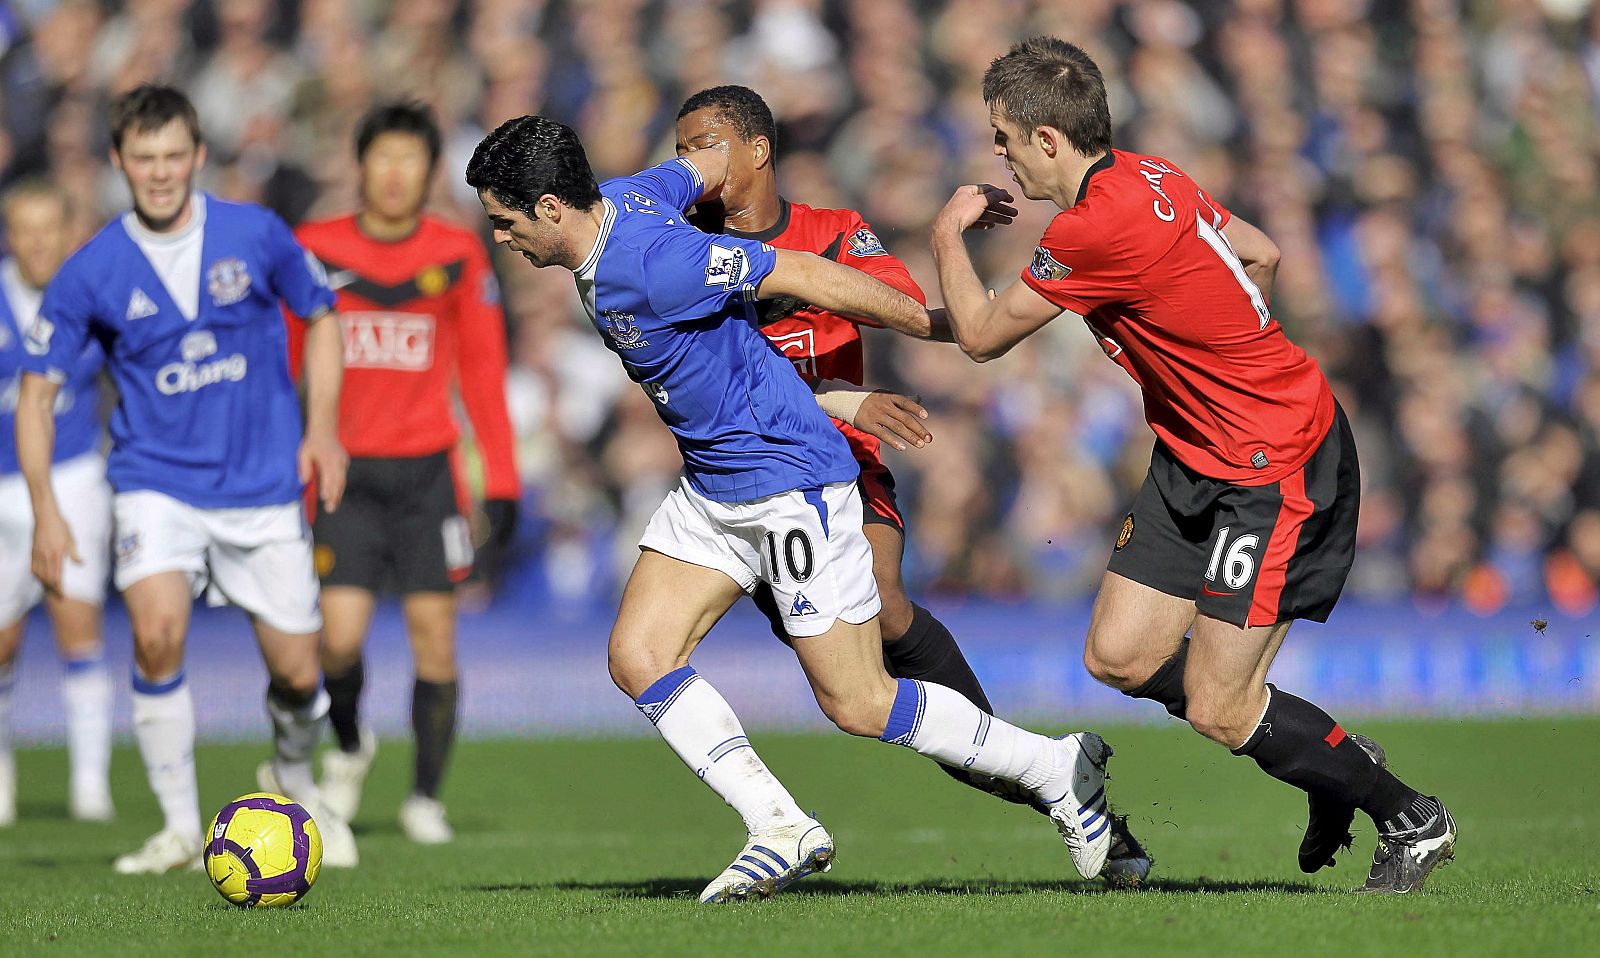 El centrocampista español del Everton Mikel Arteta (izda) lucha por el balón.